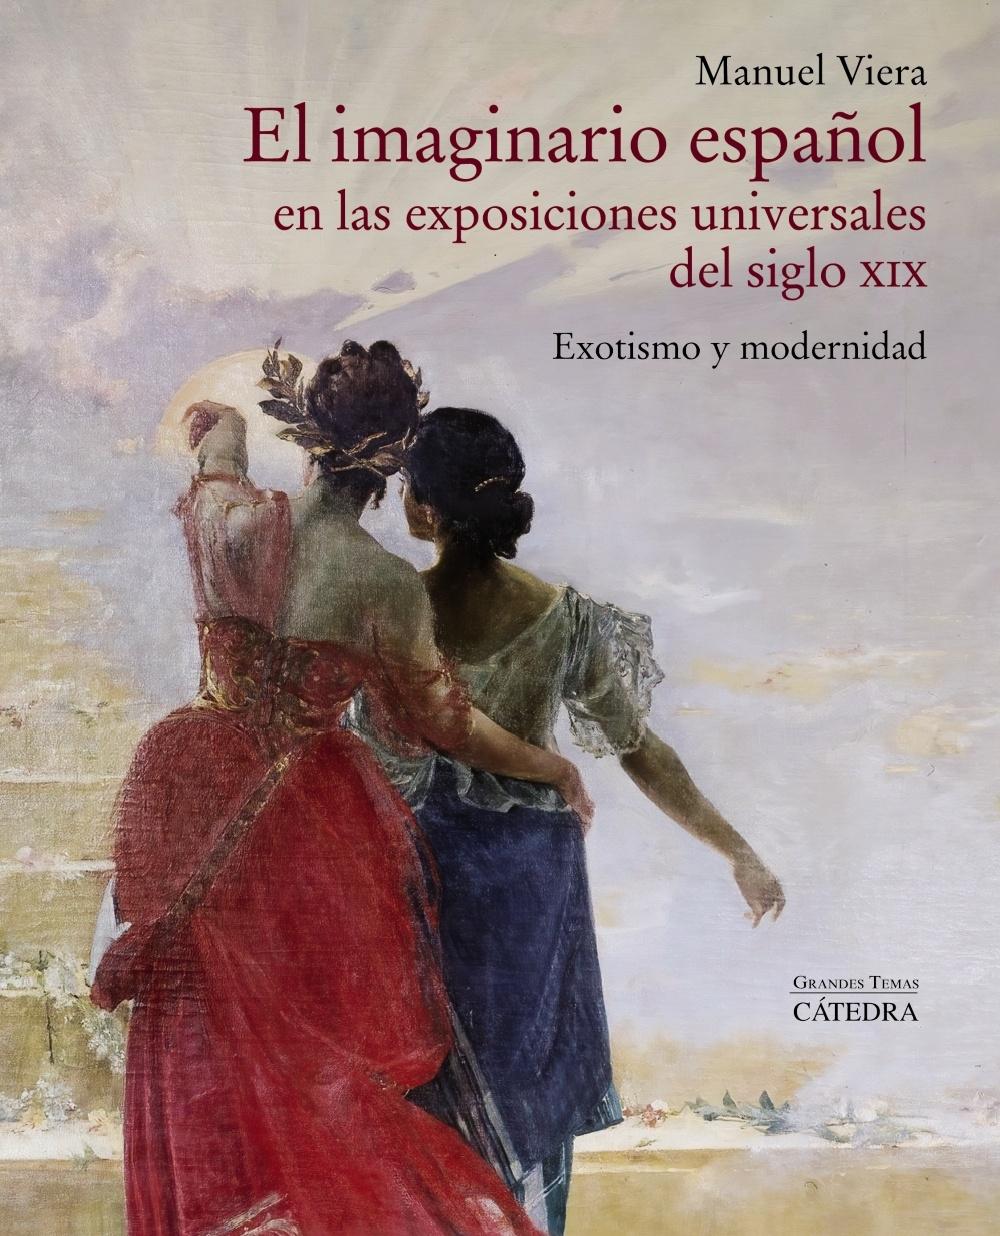 El imaginario español en las exposiciones universales del siglo XIX "Exotismo y modernidad"